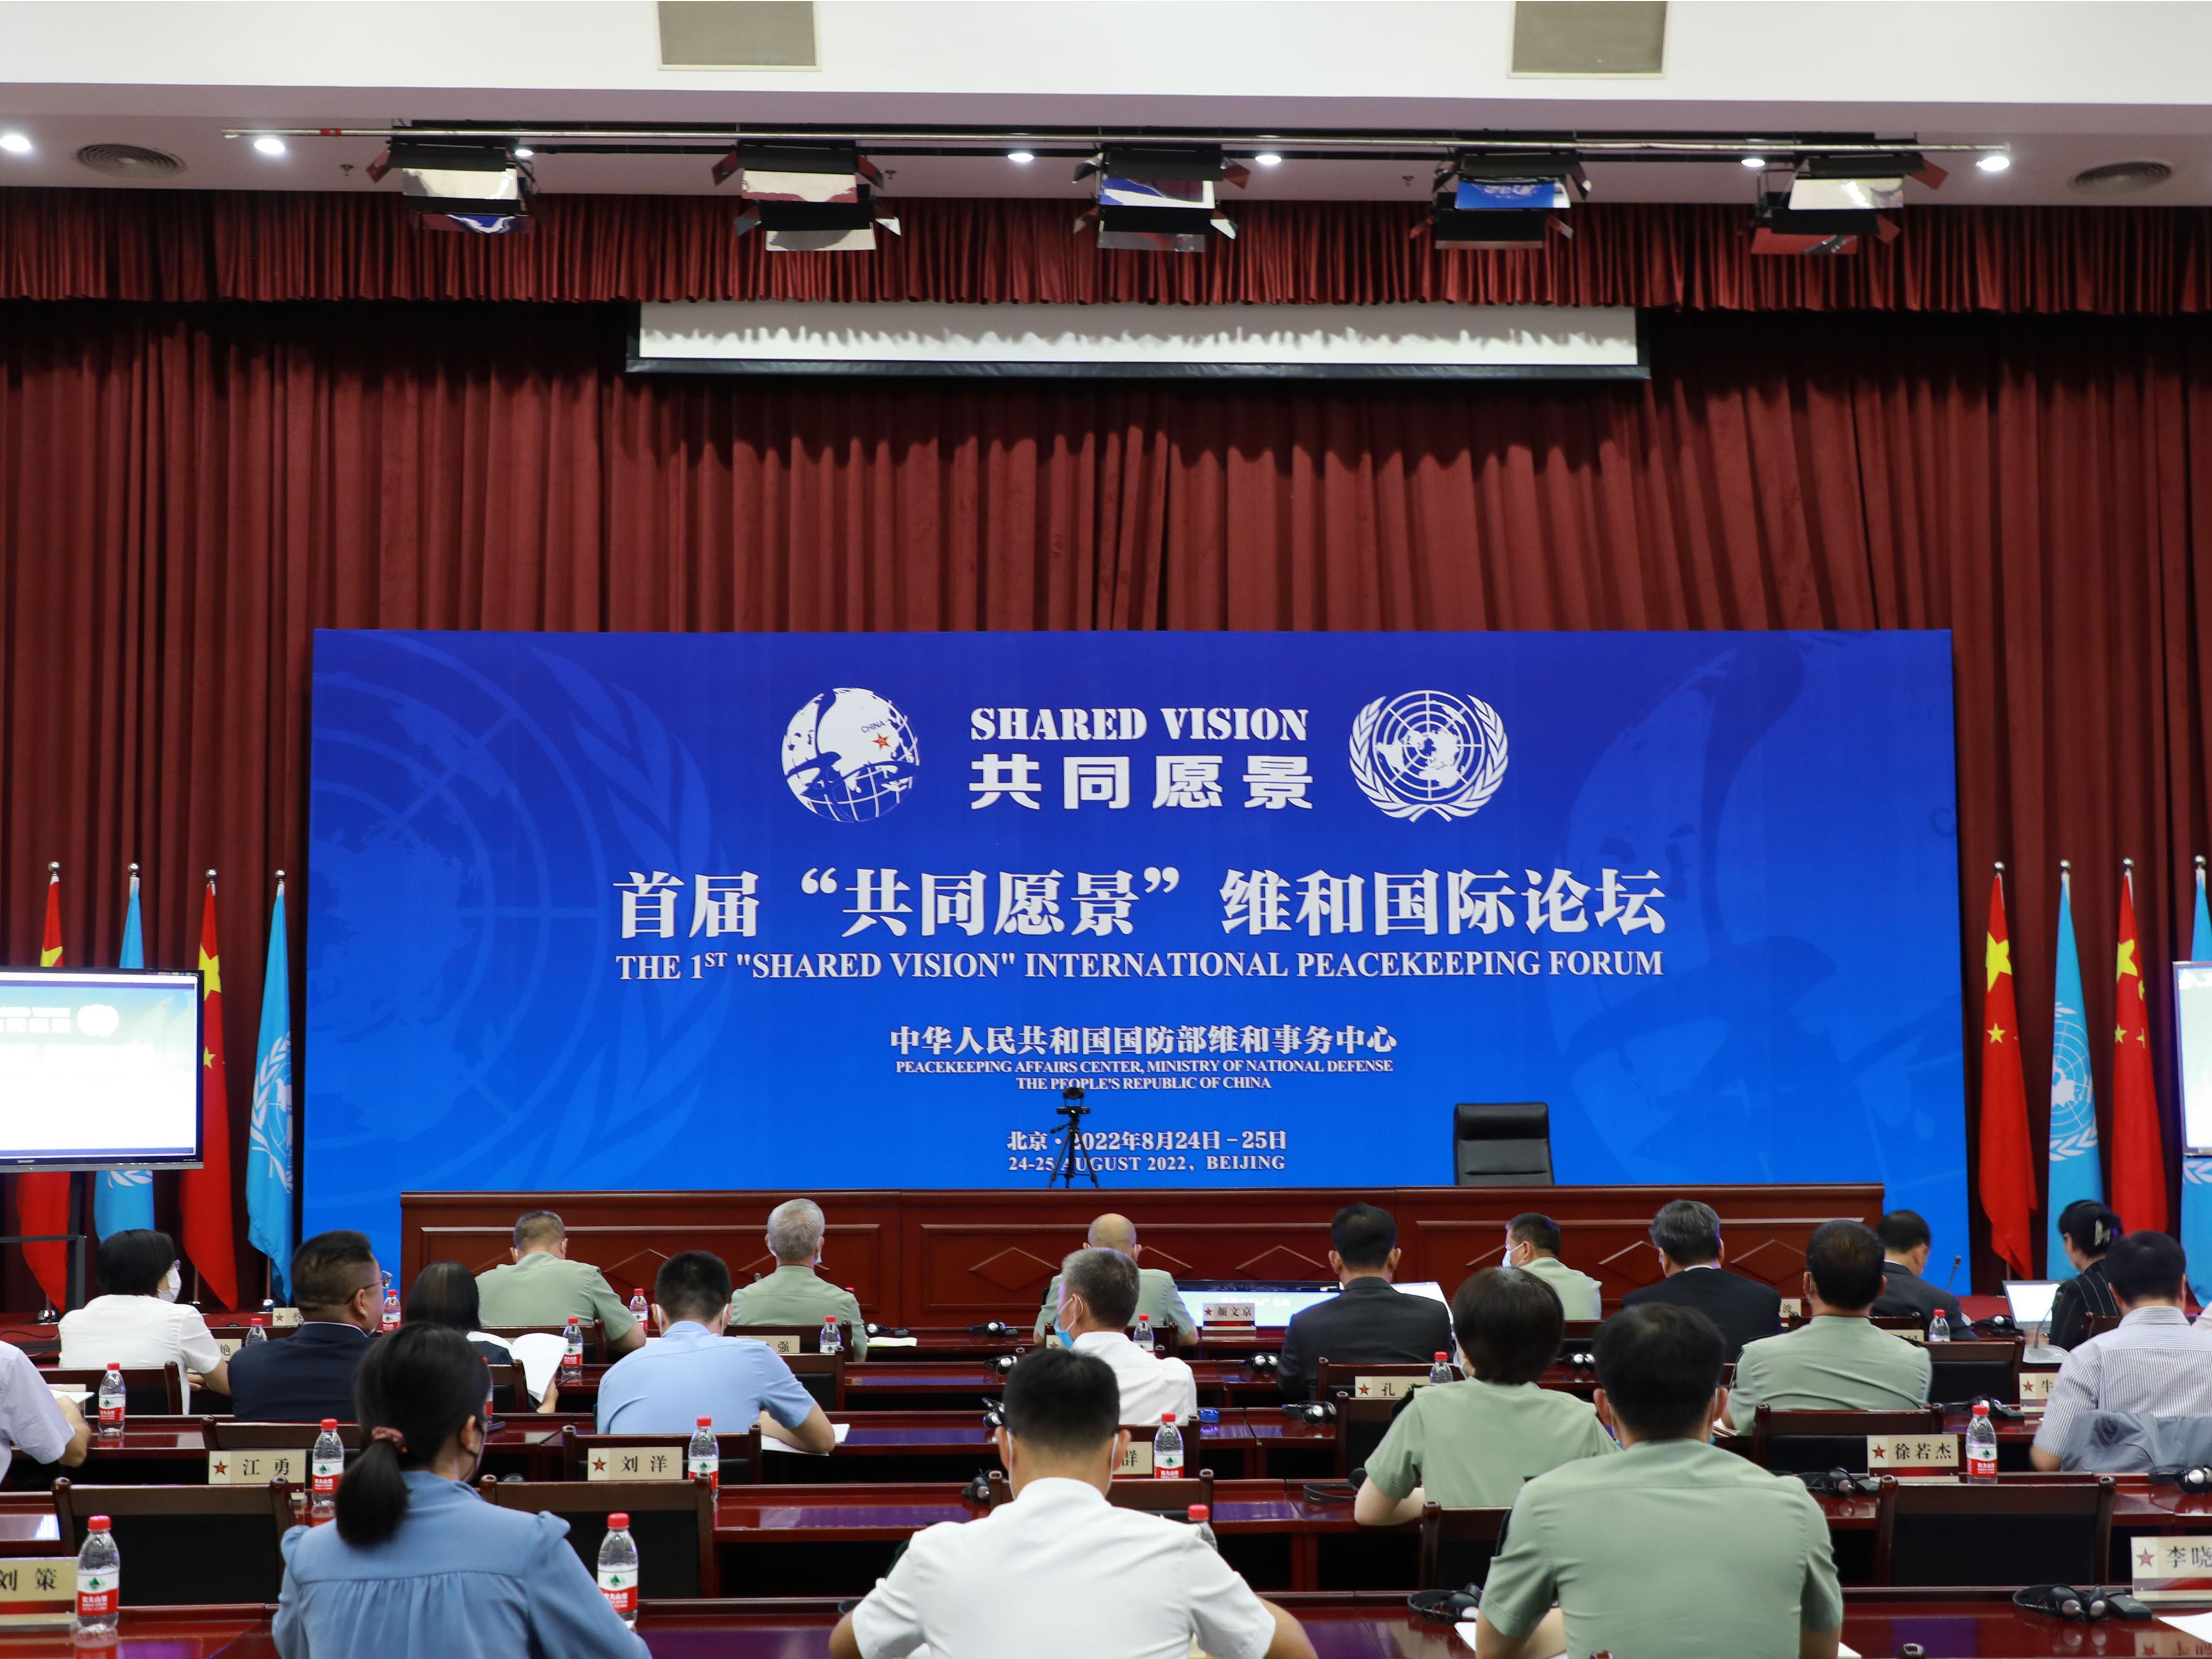 首届“共同愿景”维和国际论坛在京举行